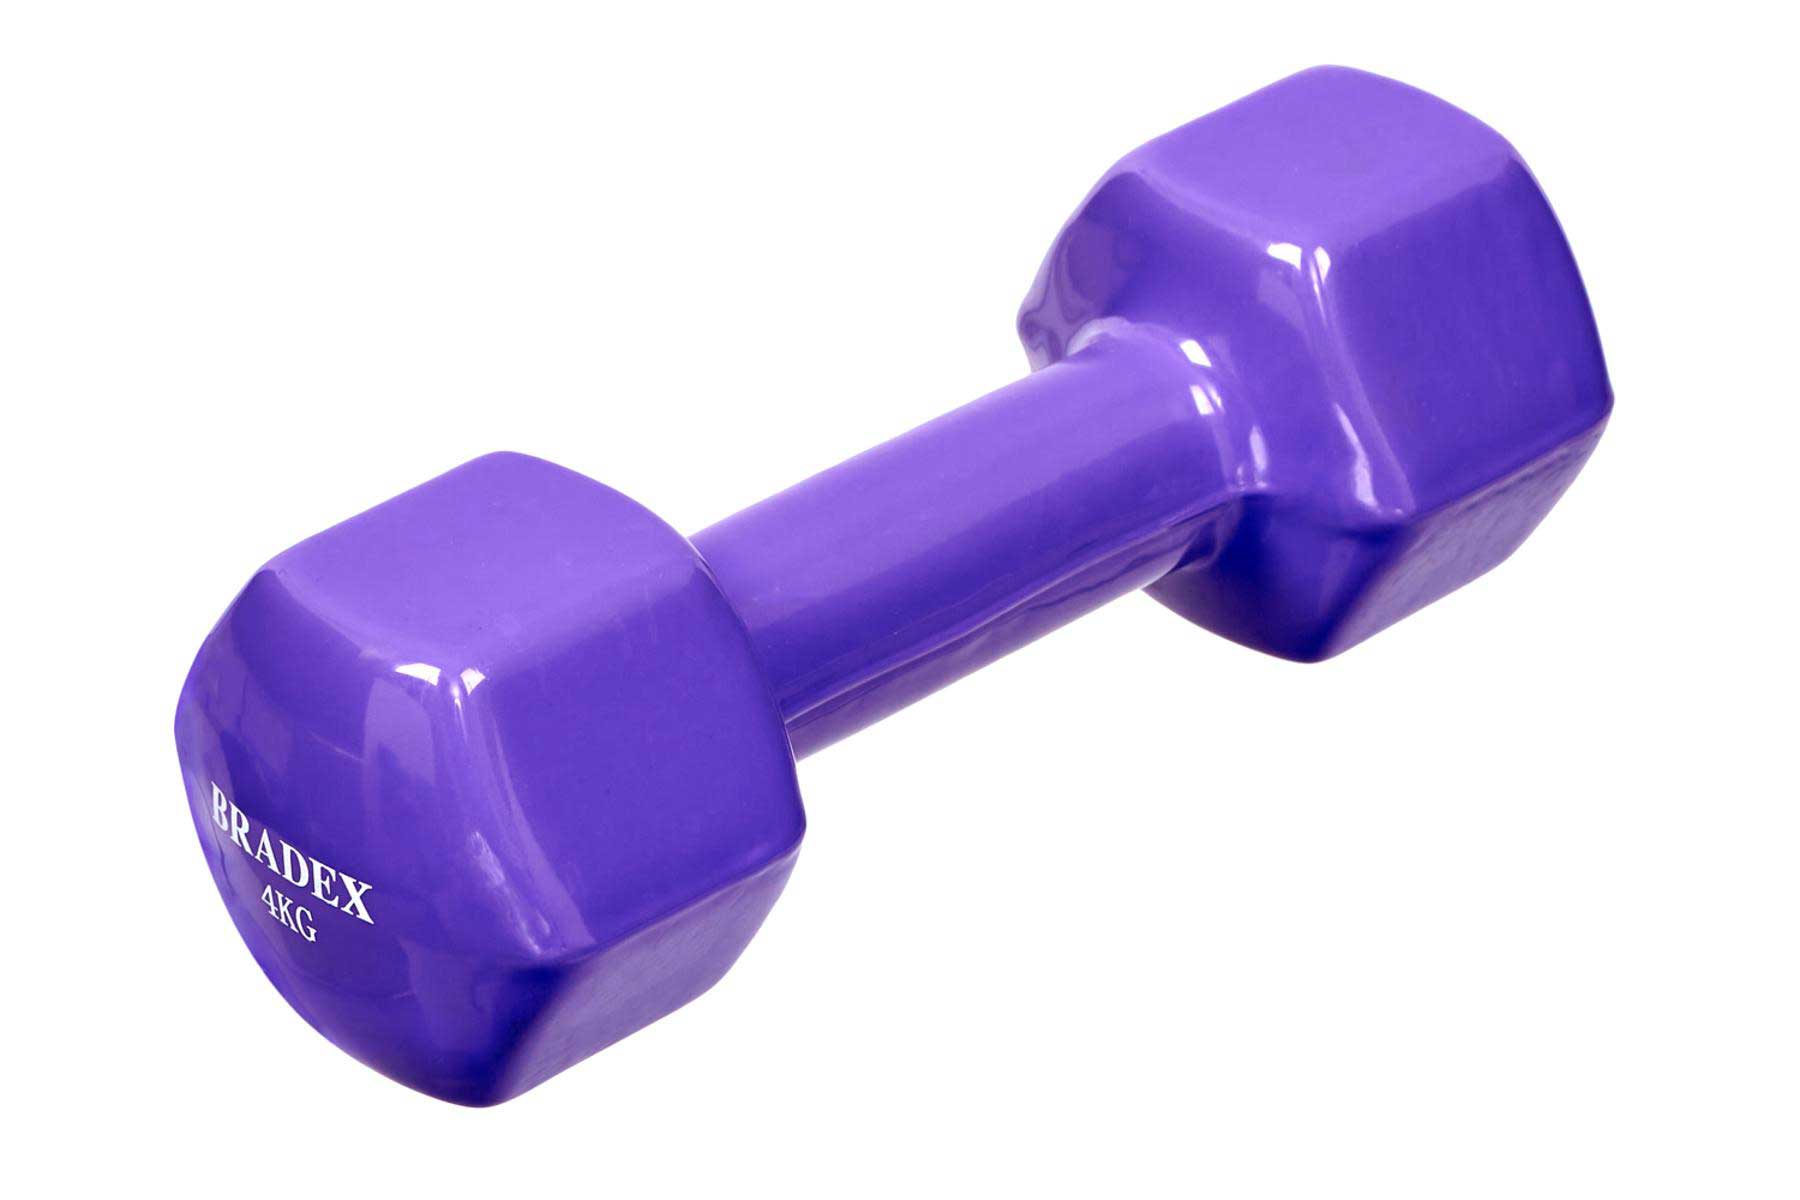 Гантель Bradex обрезиненная, фиолетовая 4 кг